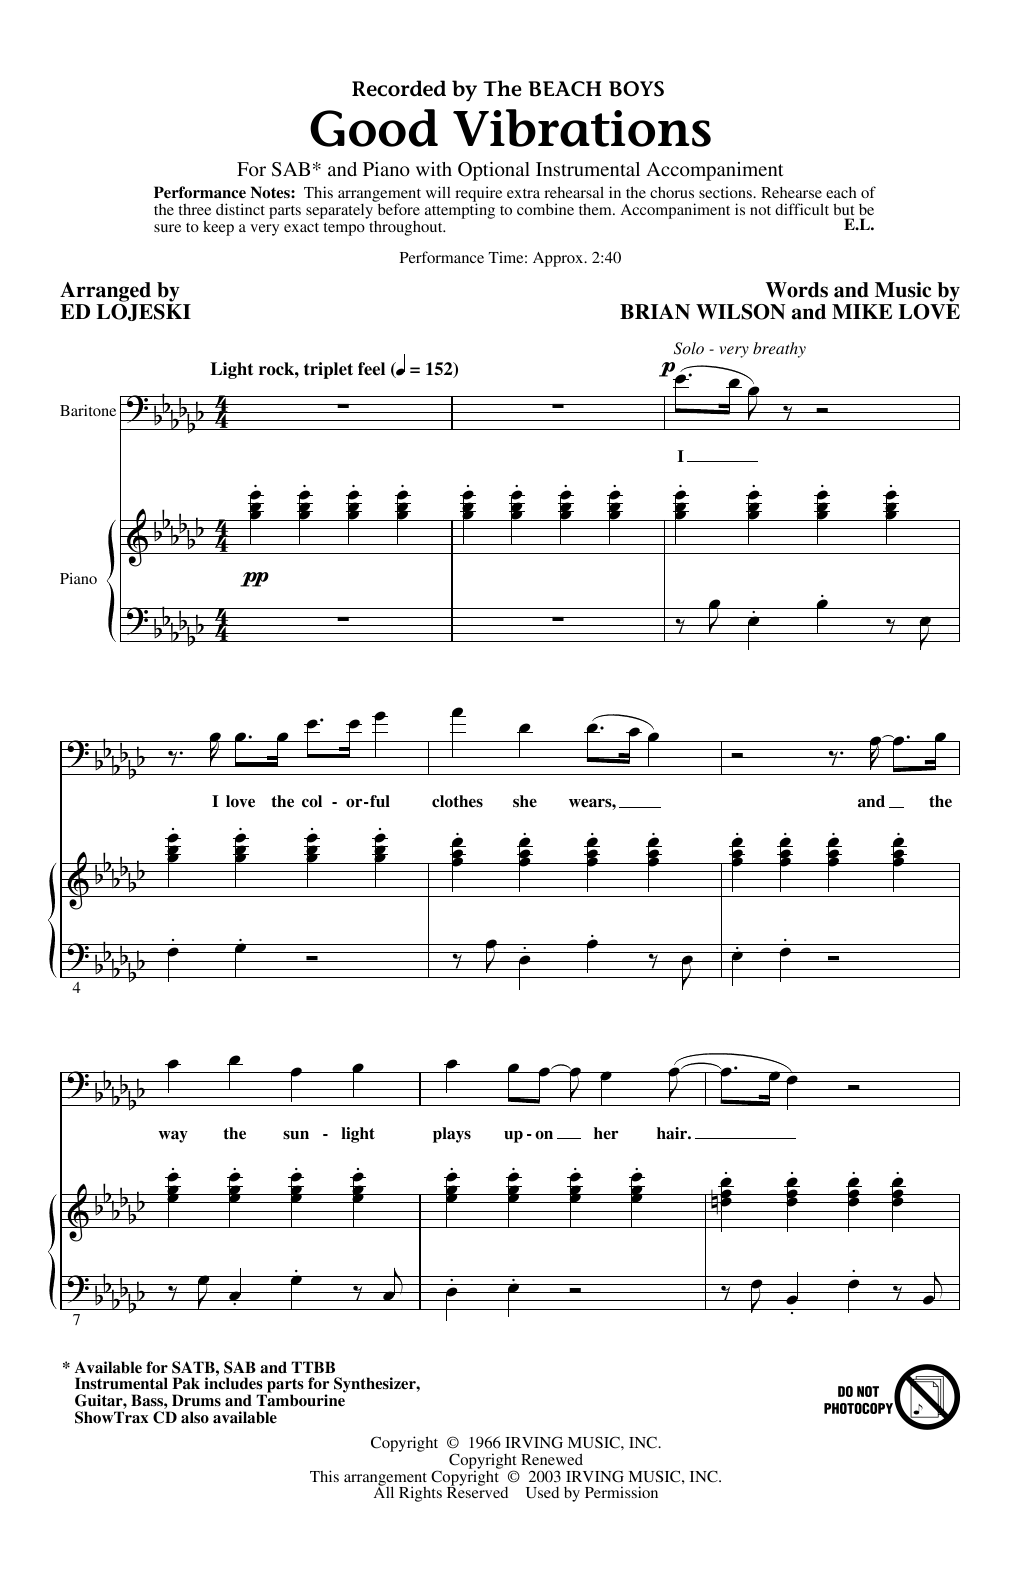 The Beach Boys Good Vibrations (arr. Ed Lojeski) sheet music notes and chords arranged for TTBB Choir